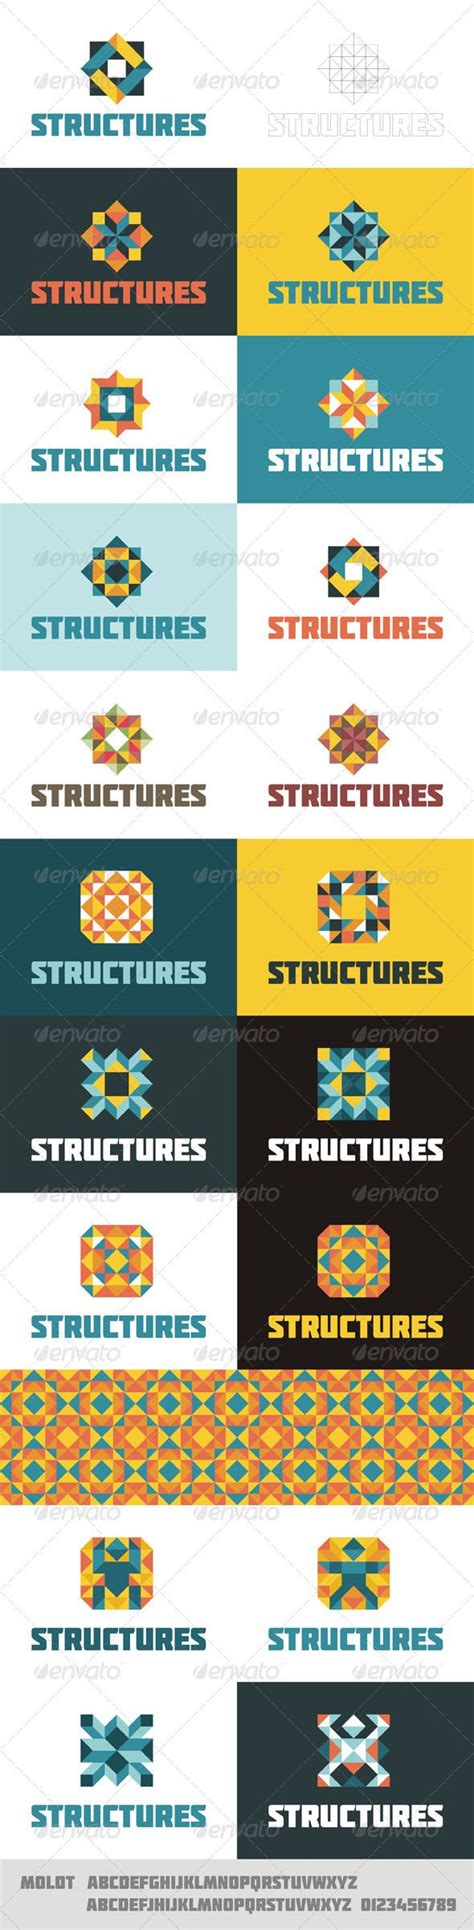 structures logo concept  izobrazheniyami